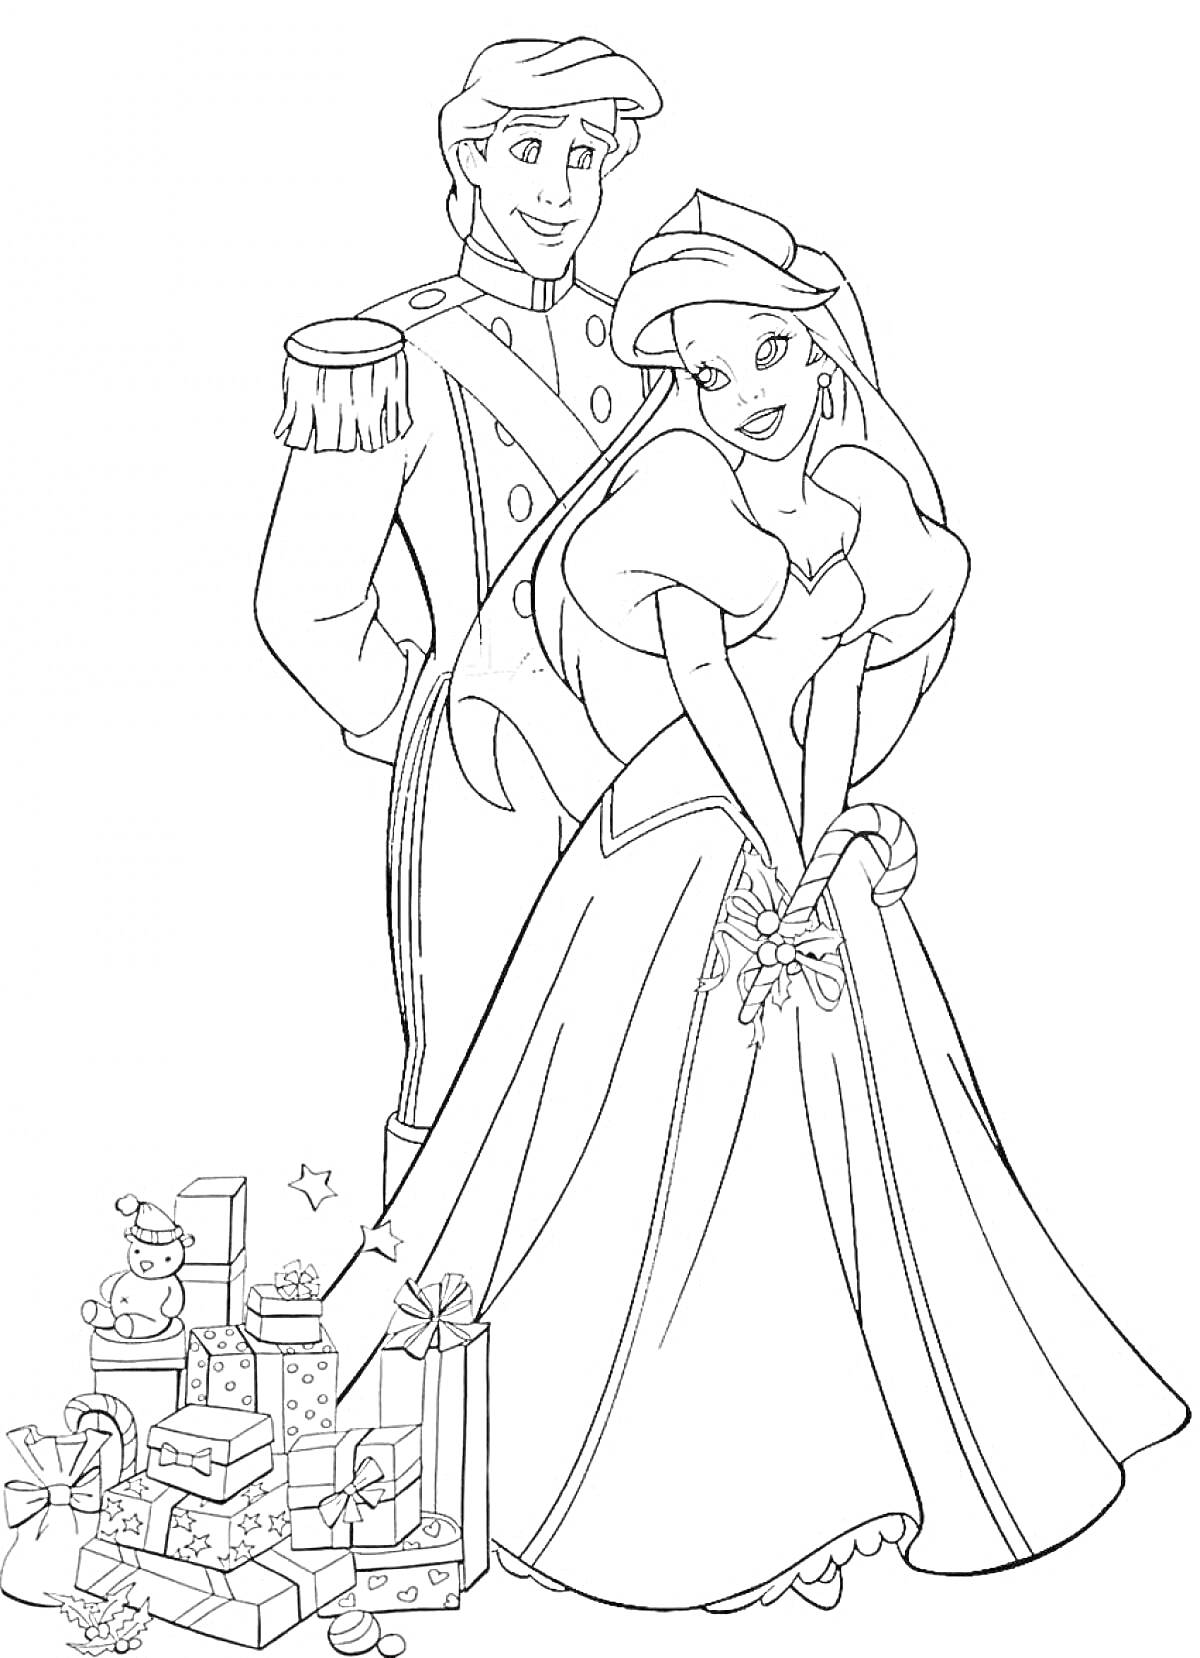 Раскраска Принц и принцесса среди подарков